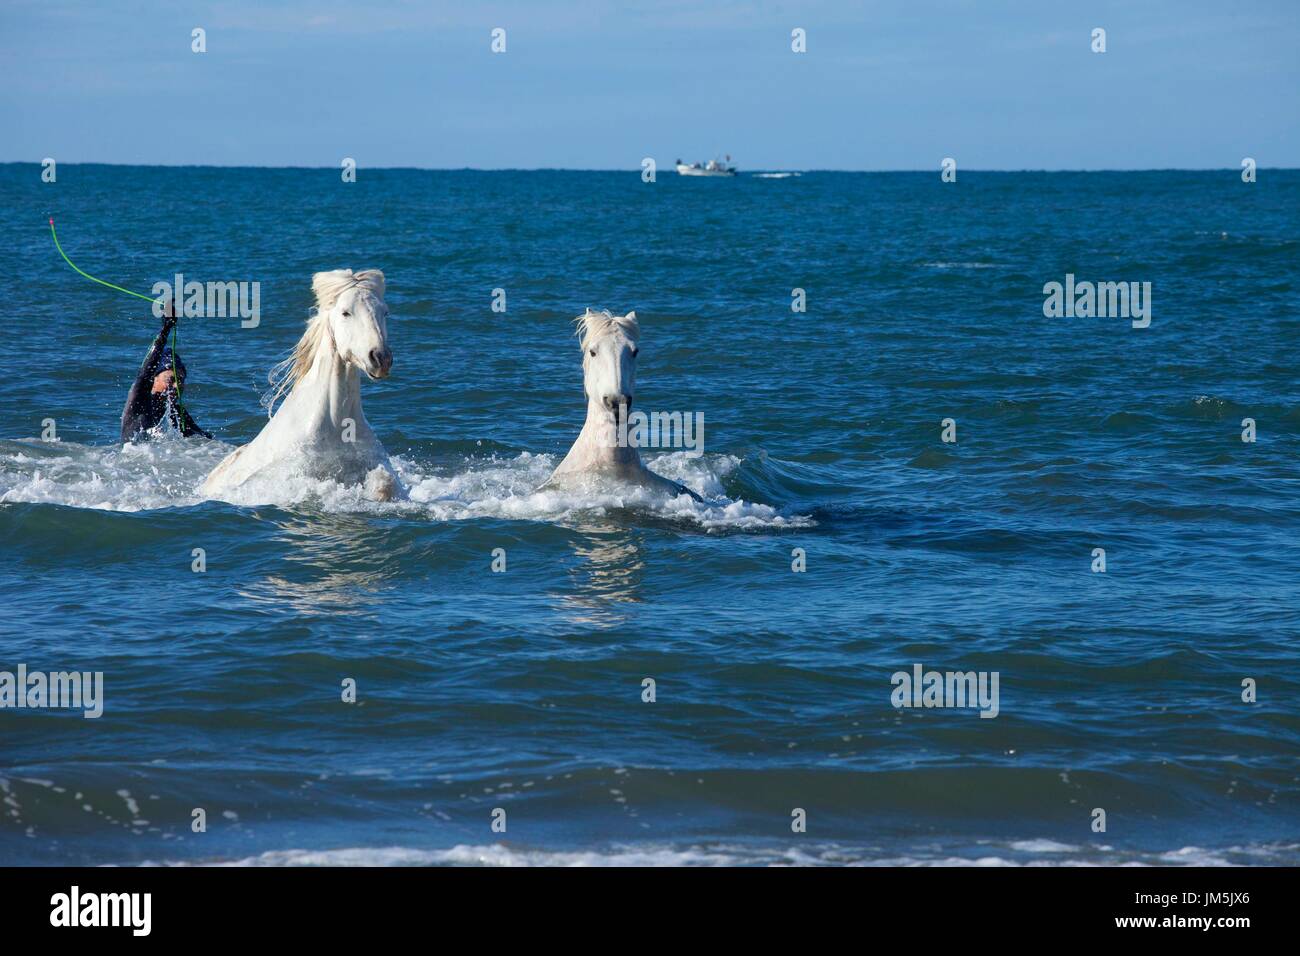 Weiße Pferde, Camarque, Frankreich Stockfoto